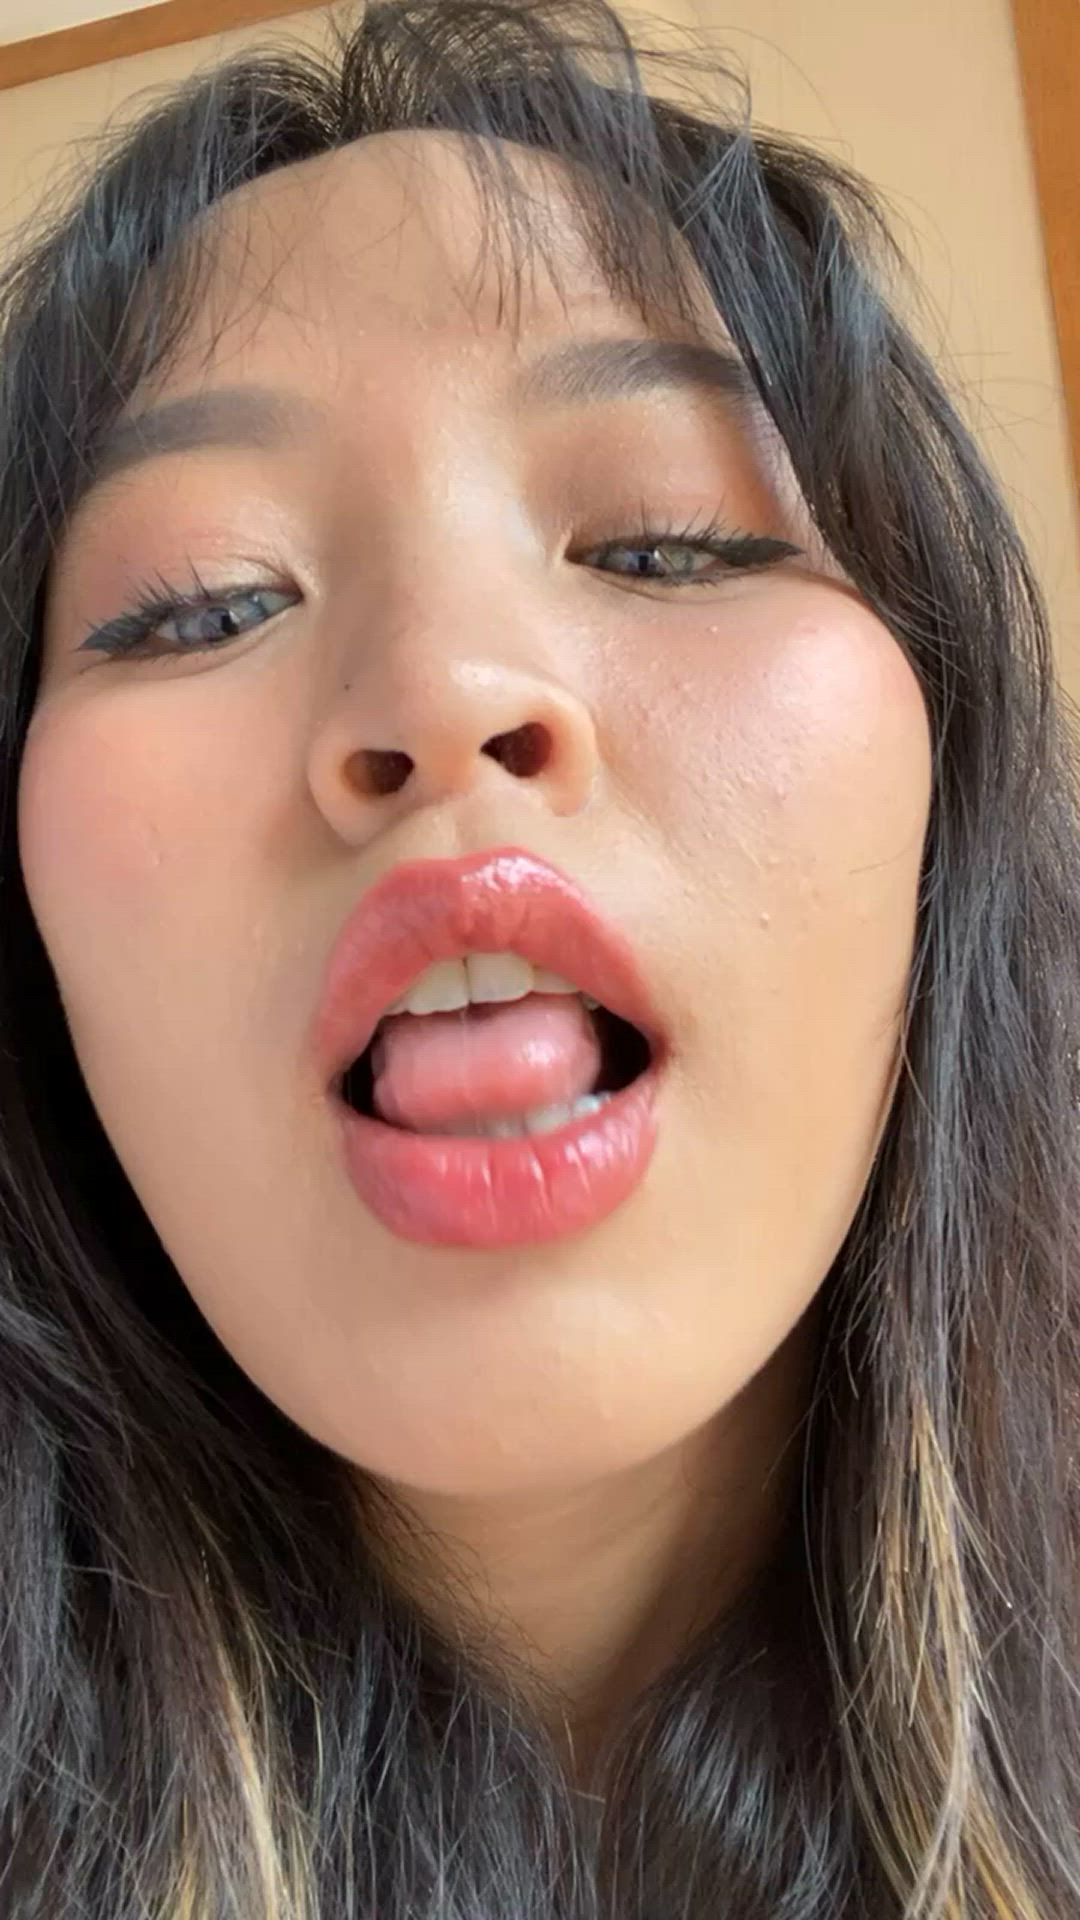 Asian porn video with onlyfans model leeanfoxxx <strong>@leeanfoxxx</strong>